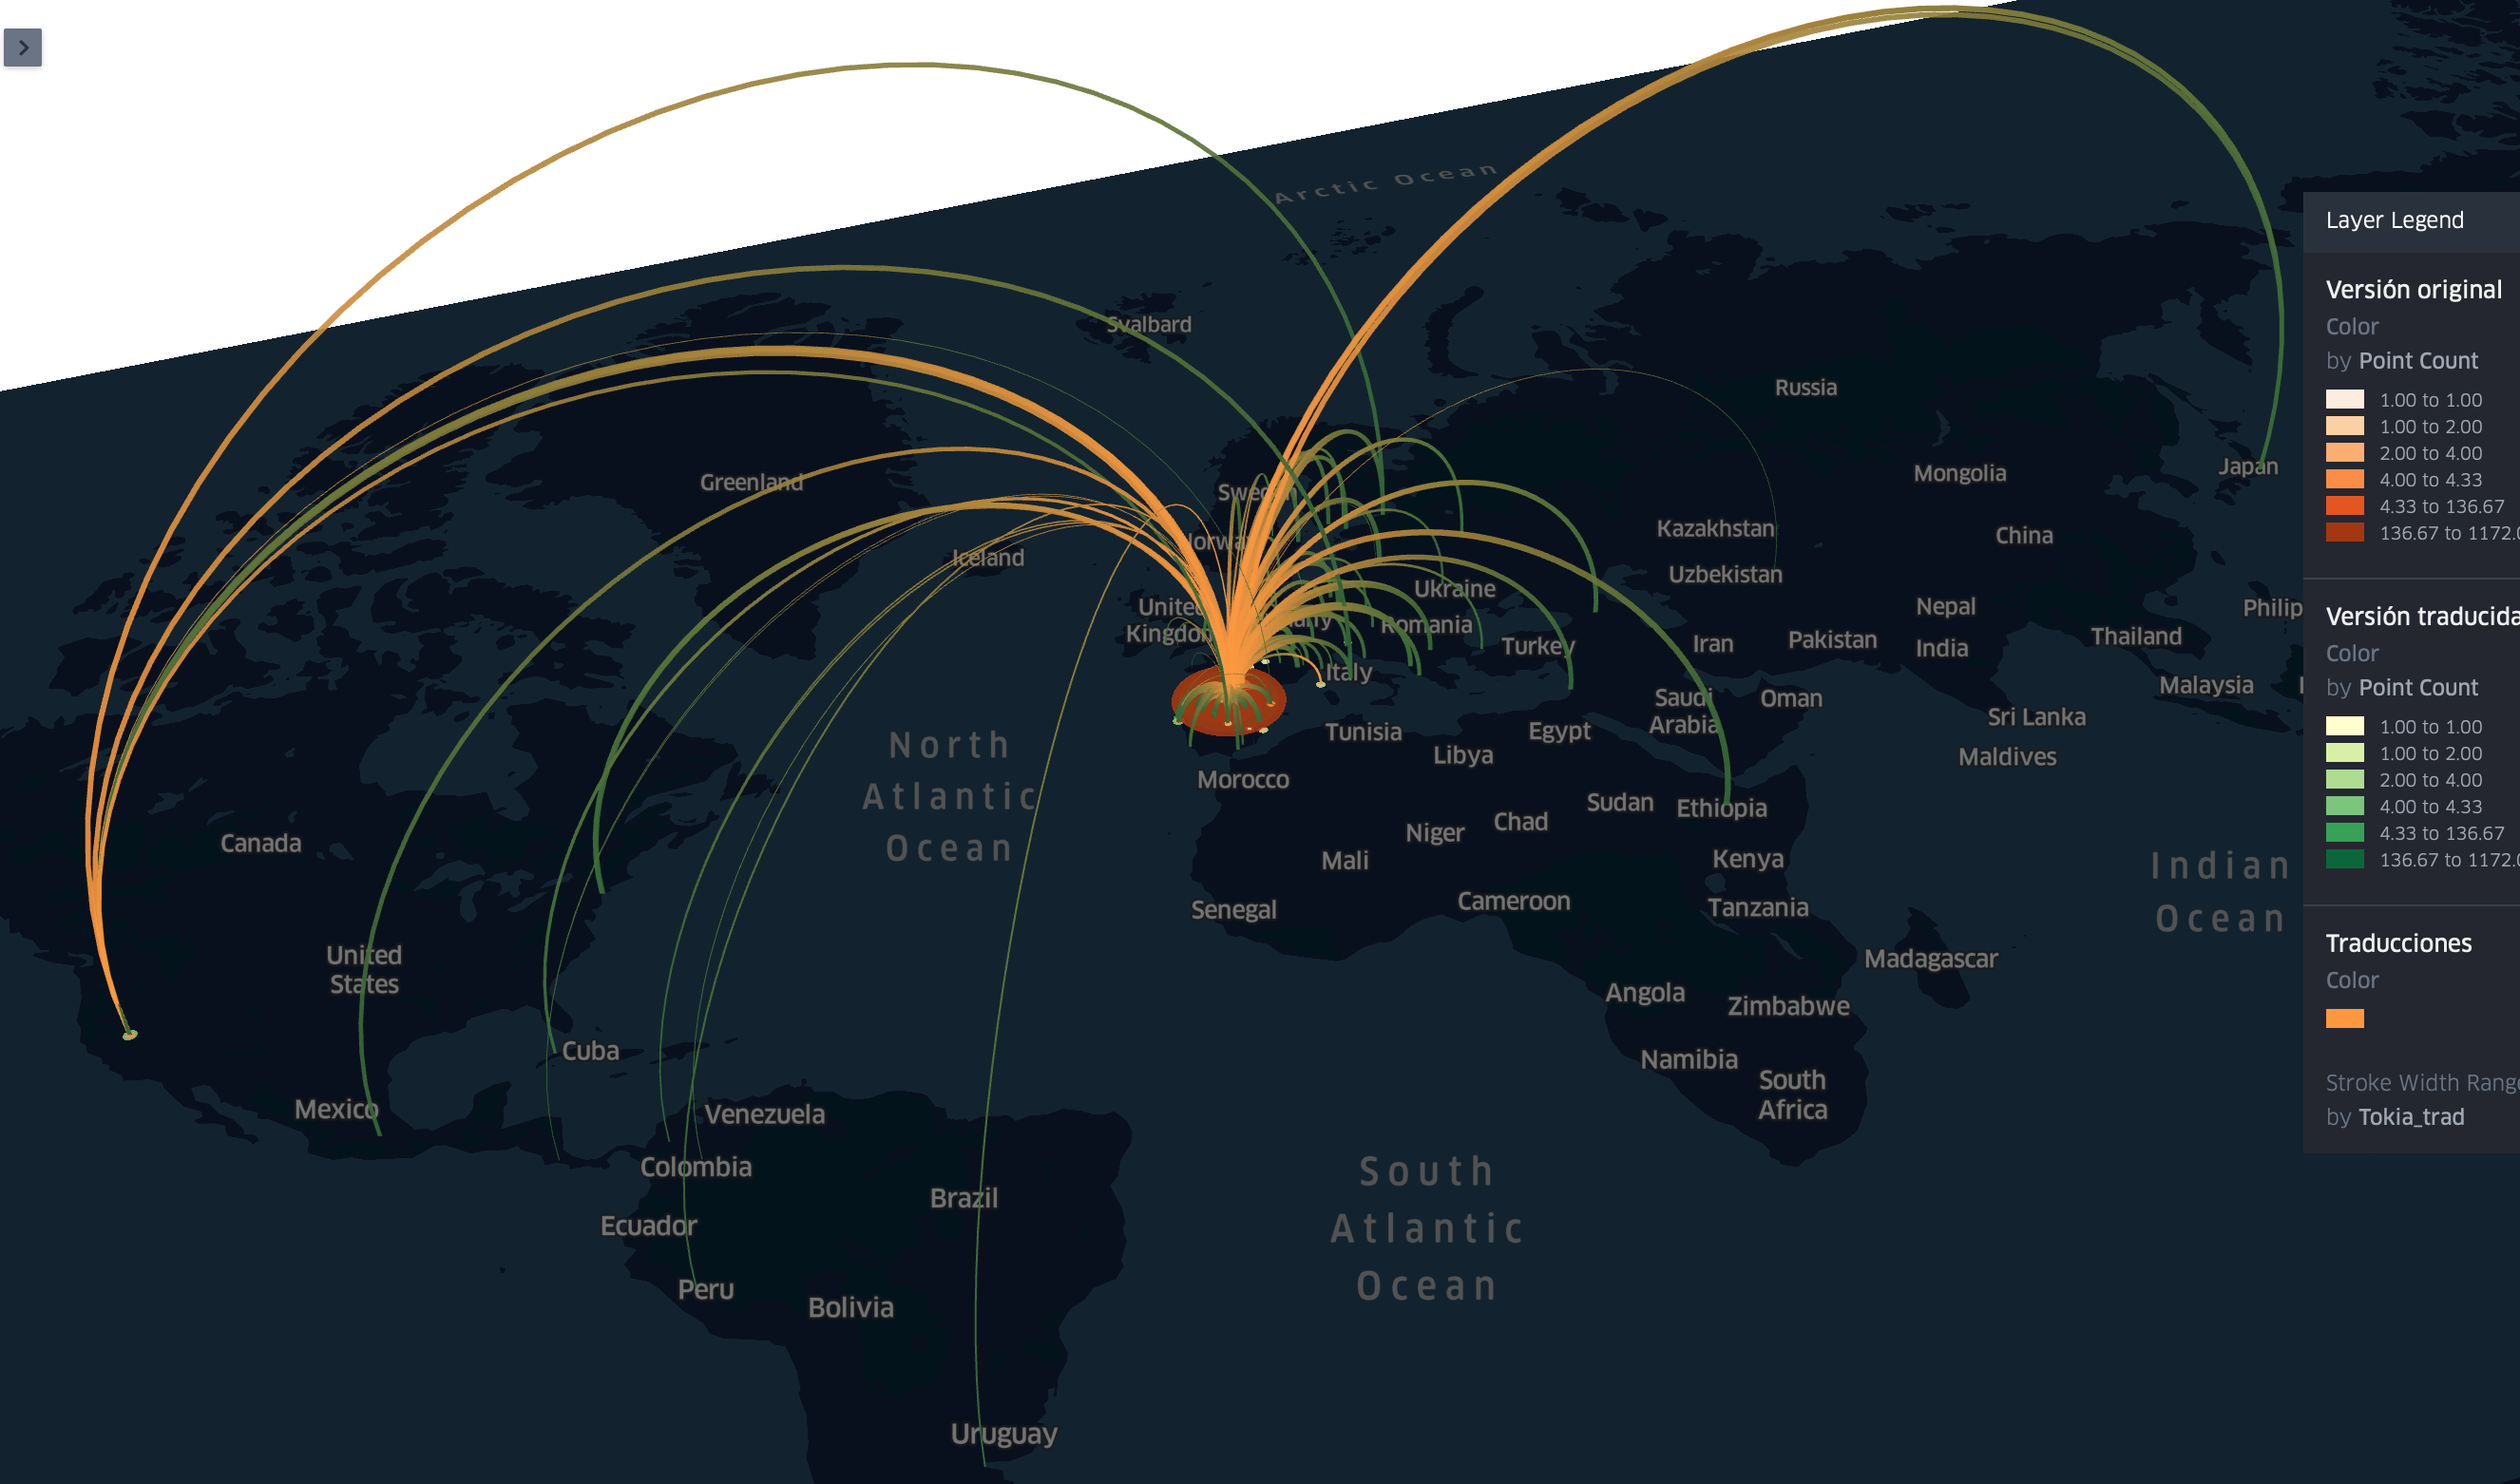 Visualización de las traducciones de literatura vasca a otros idiomas/países en un mapa